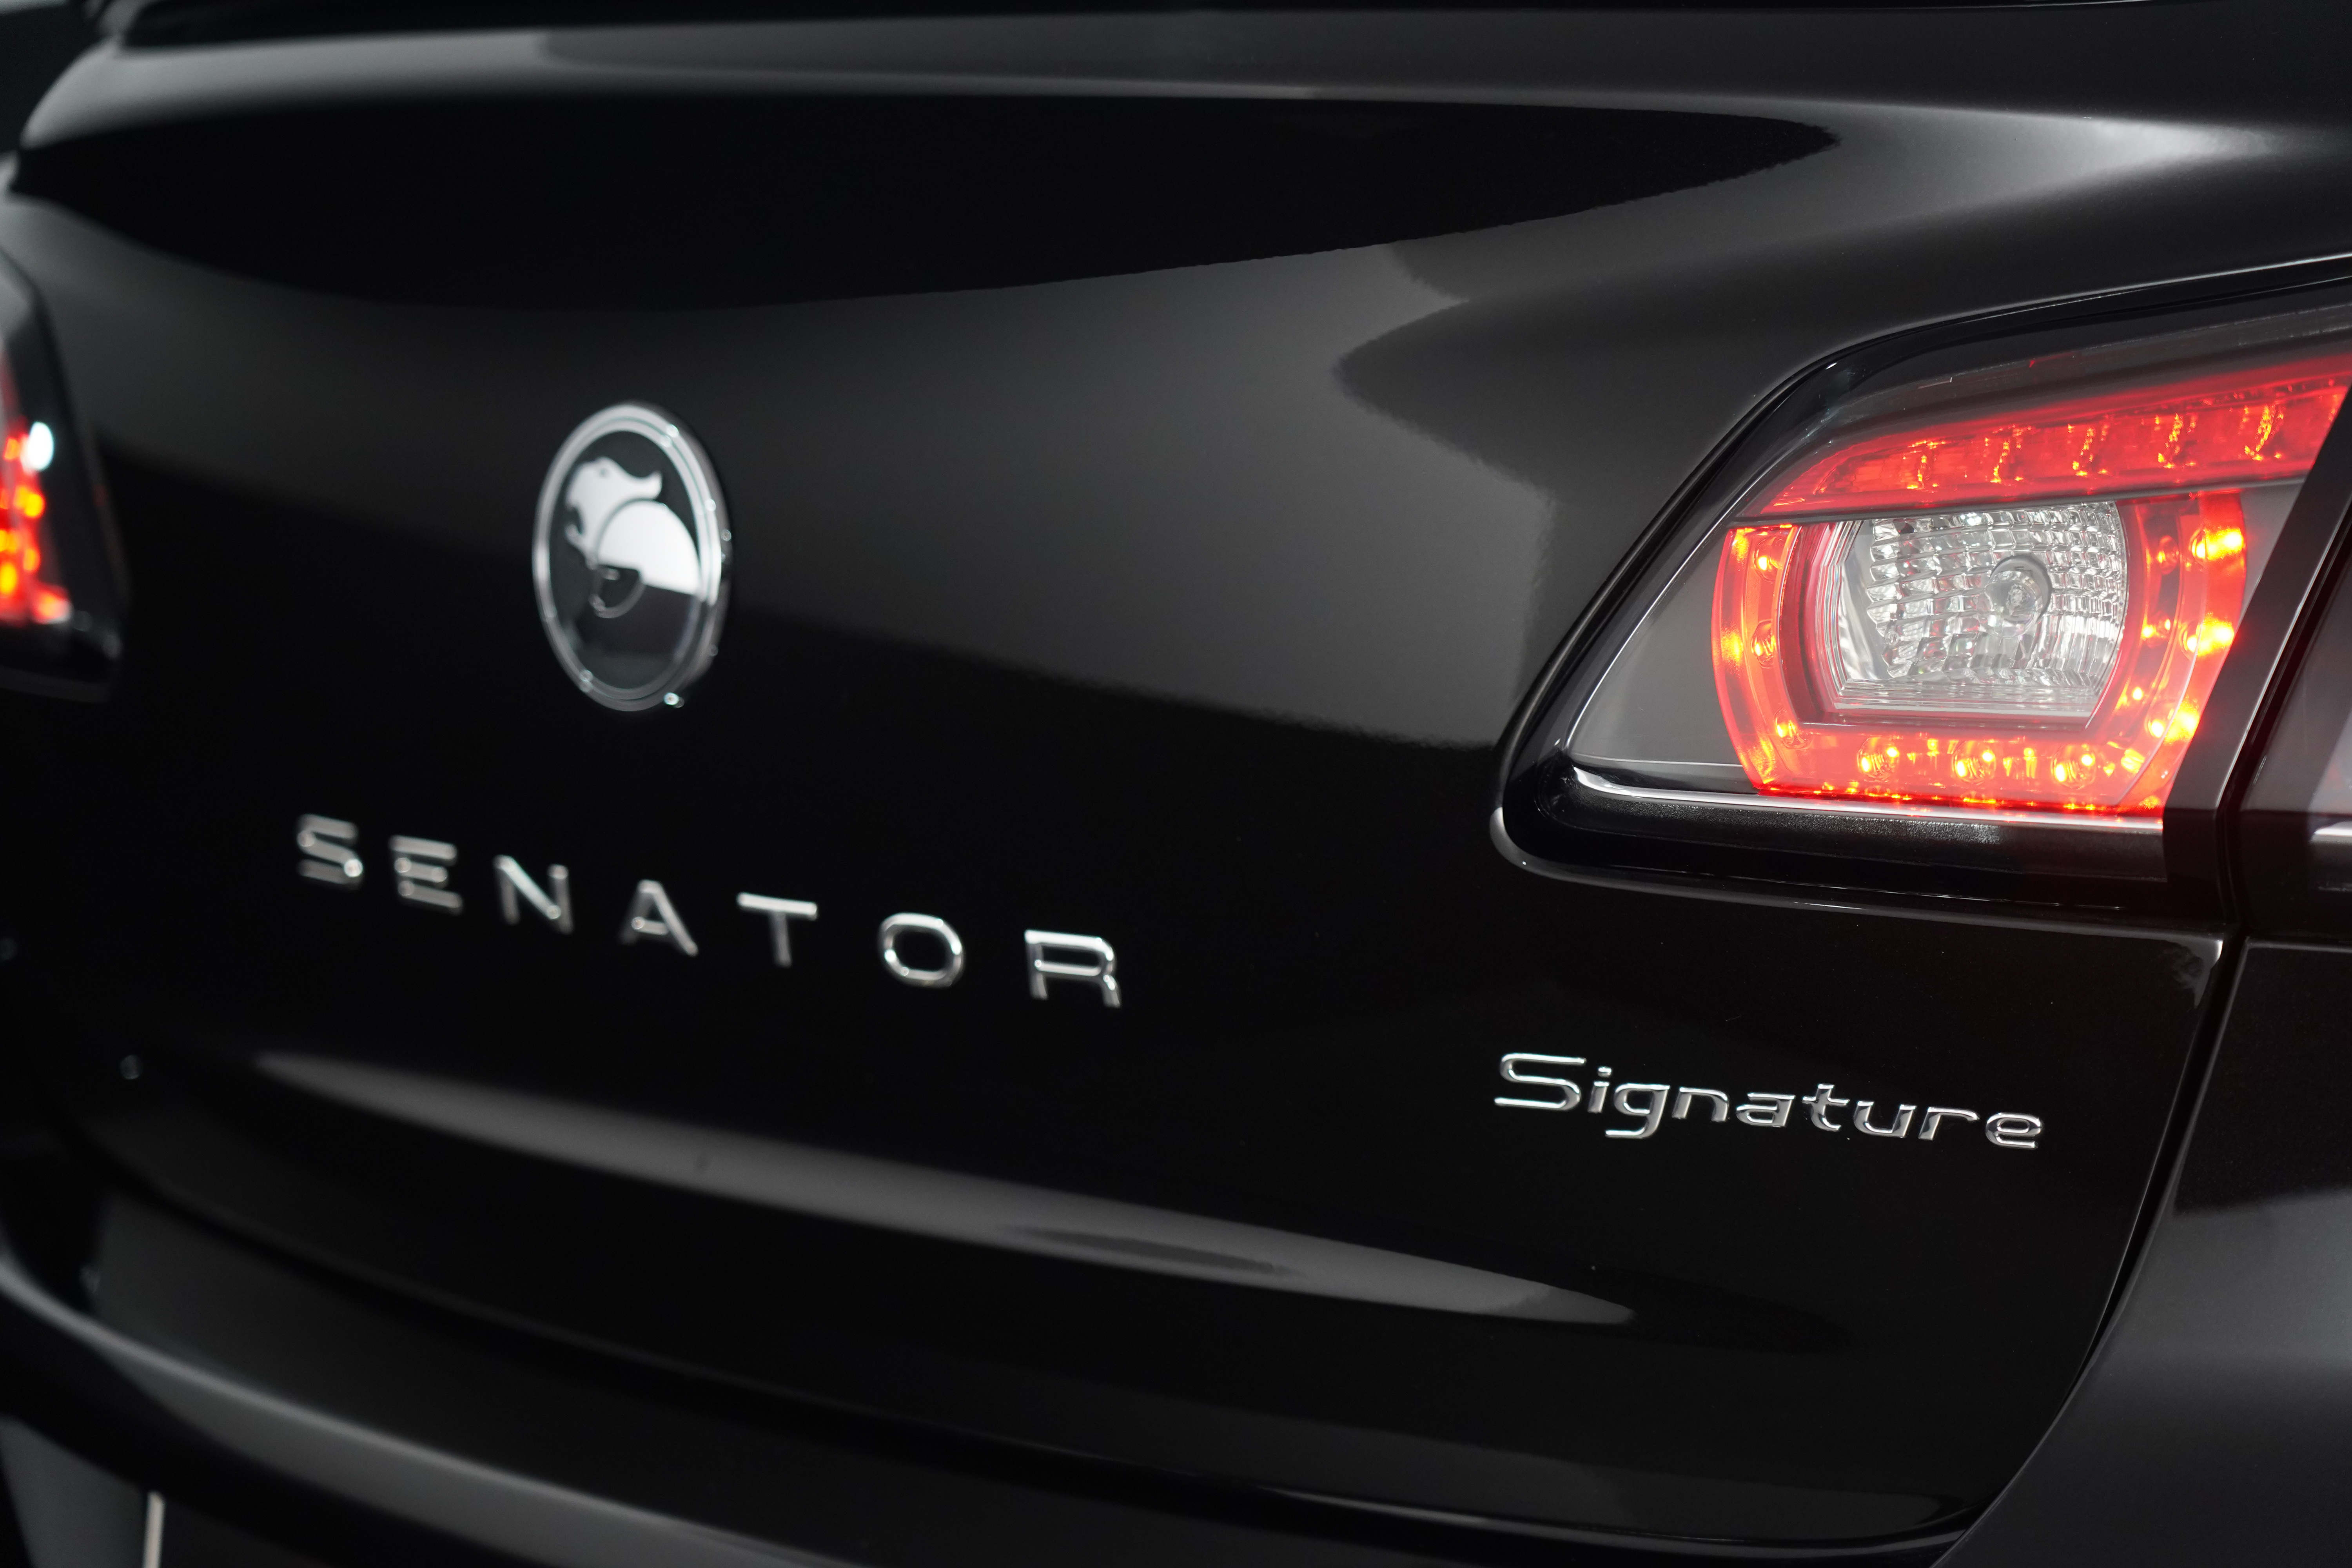 2017 HSV Senator Hsv Senator Signature 30th Edition Auto Signature 30th Edition Sedan Image 9